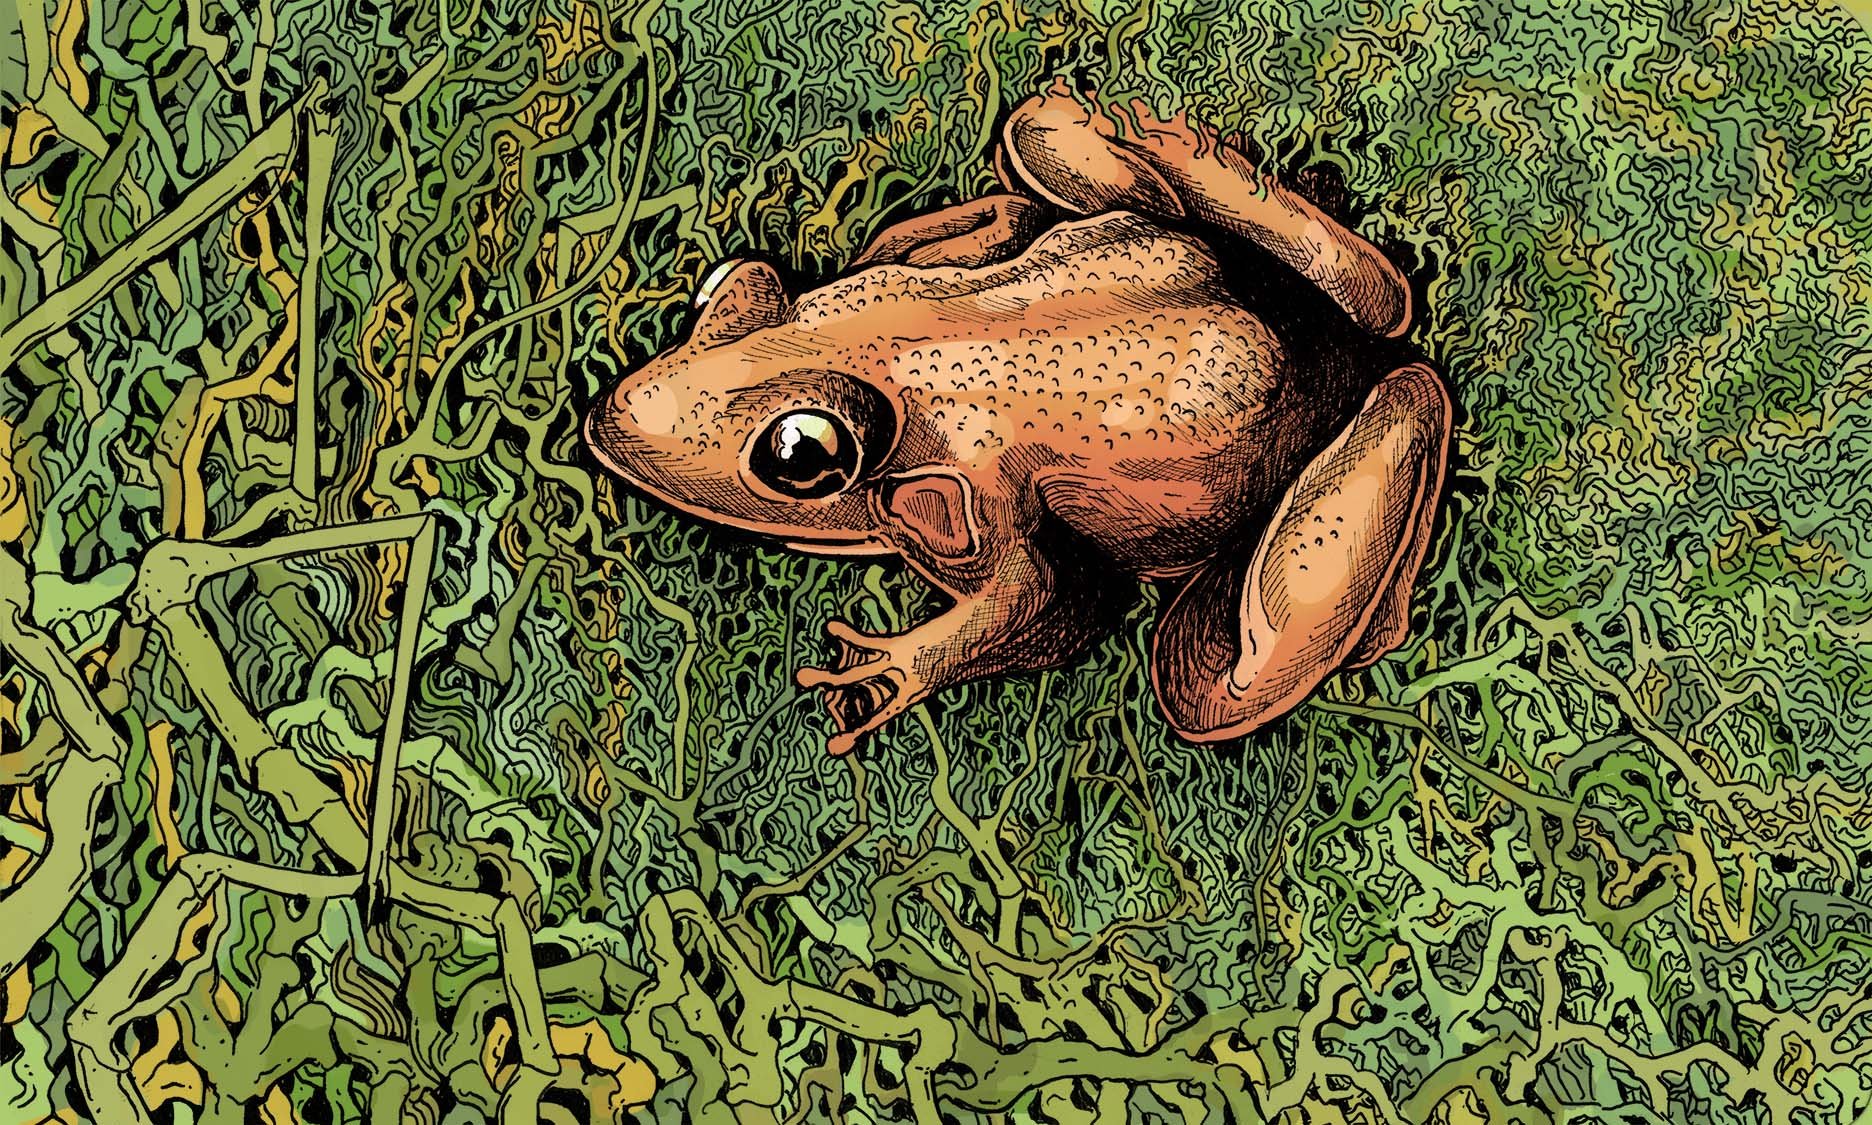 Personal Sketch of Frog from Ragdale Artist Residency